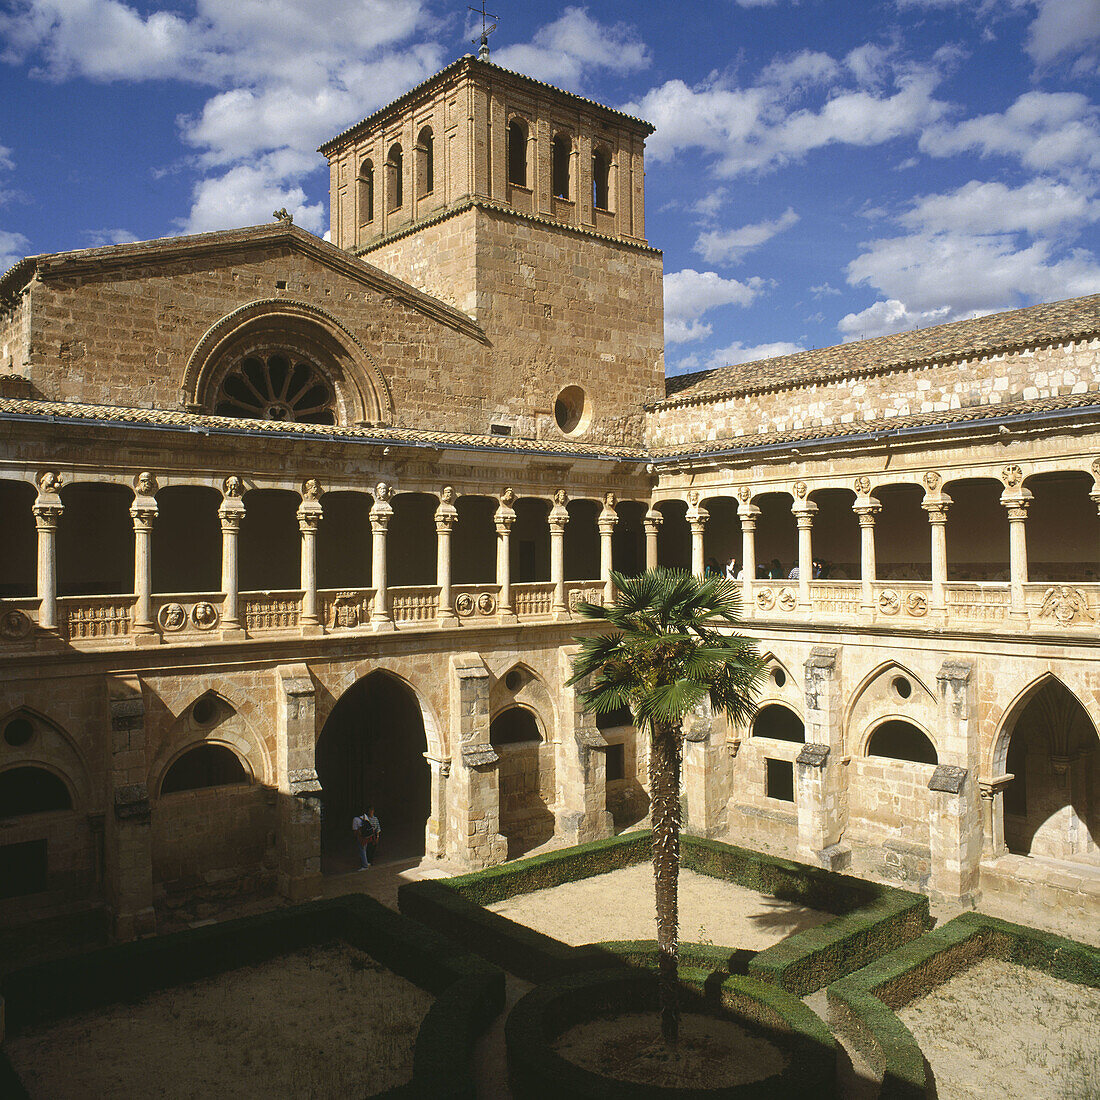 Monastery of Santa Maria de Huerta. Soria province, Castilla-León, Spain